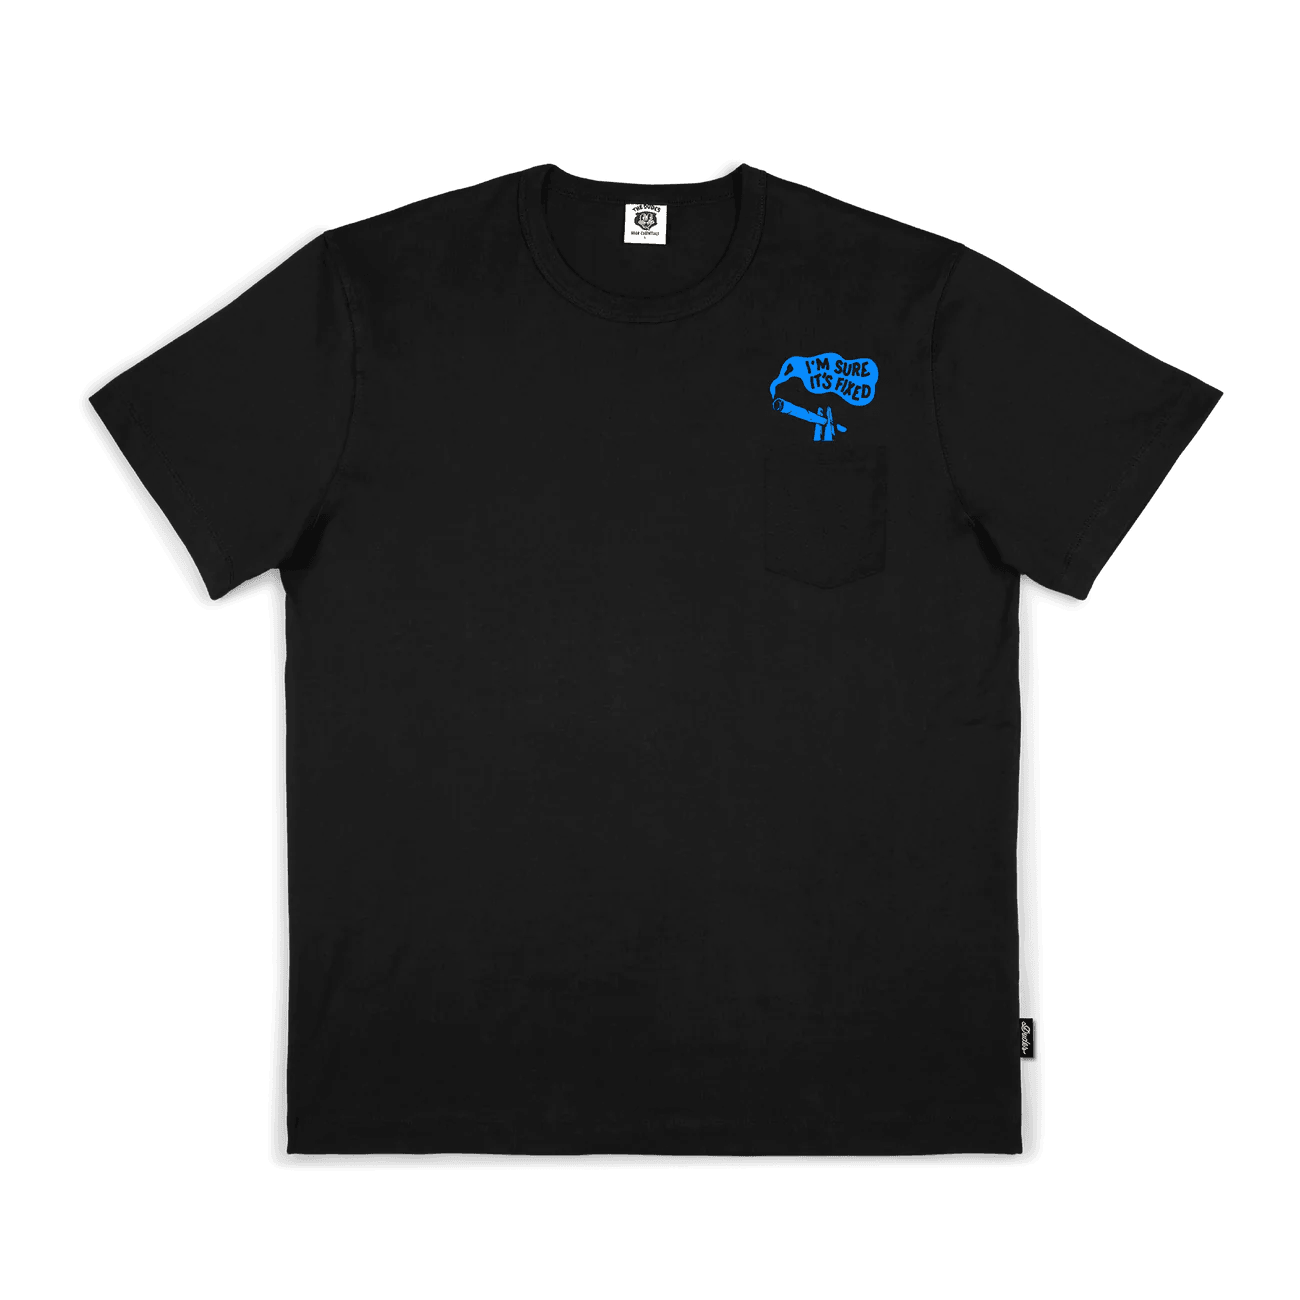 Camiseta The Dudes Stoneys Fixation - ECRU